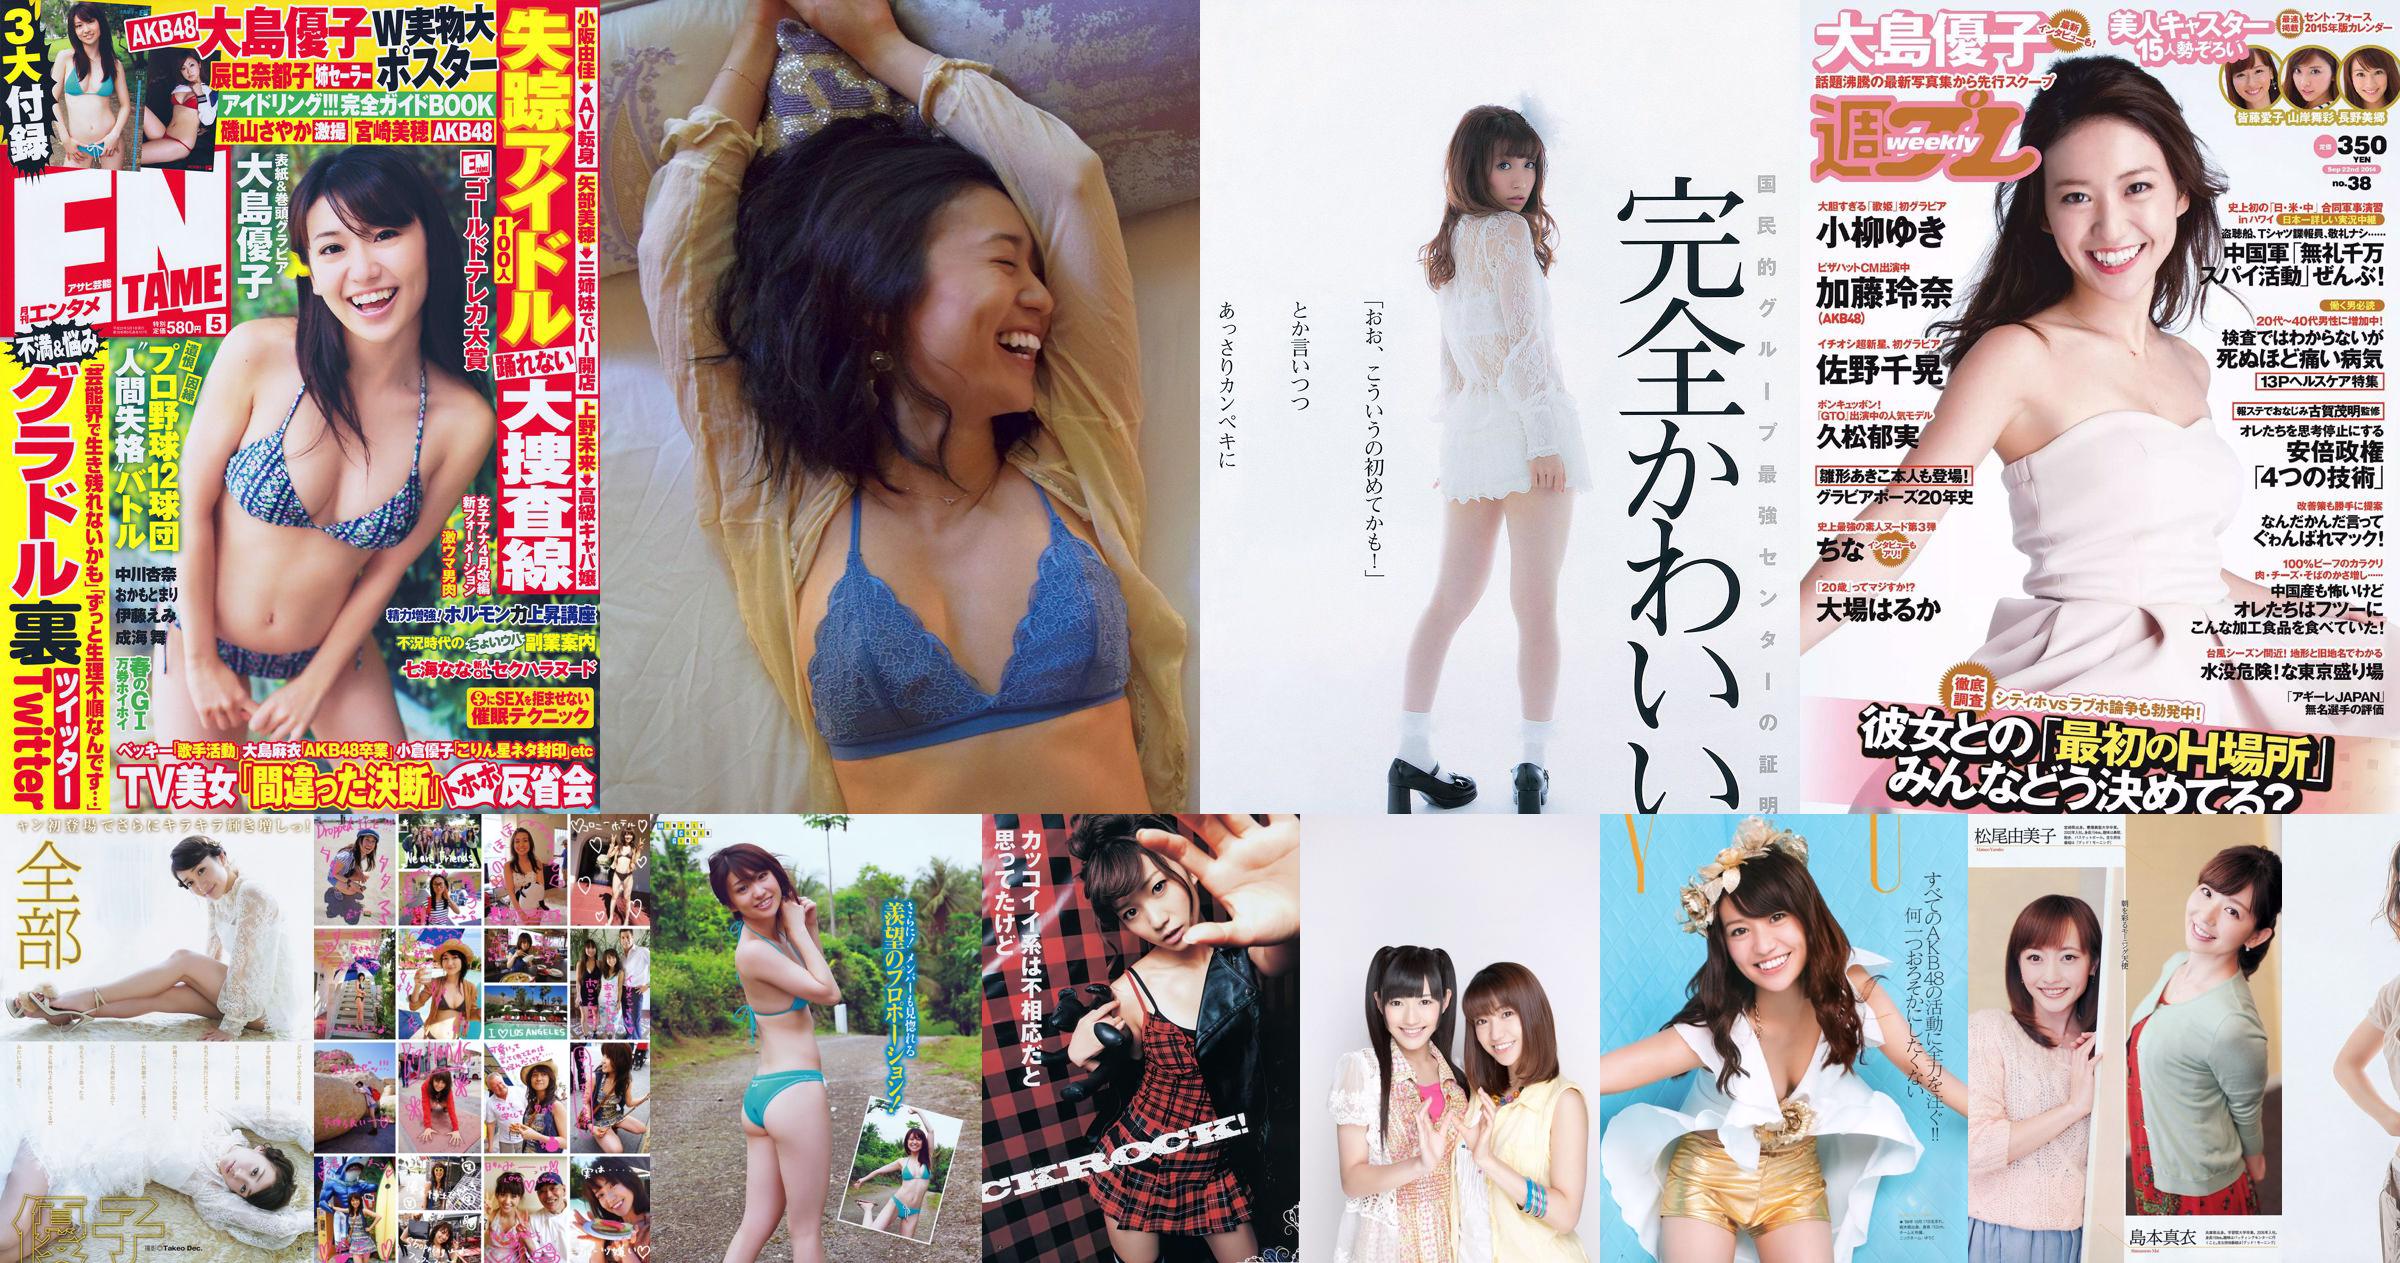 Yuko Oshima Nogizaka46 AKB48 Waiting Girls [Weekly Young Jump] 2012 No.40 Photo No.43849d Pagina 1